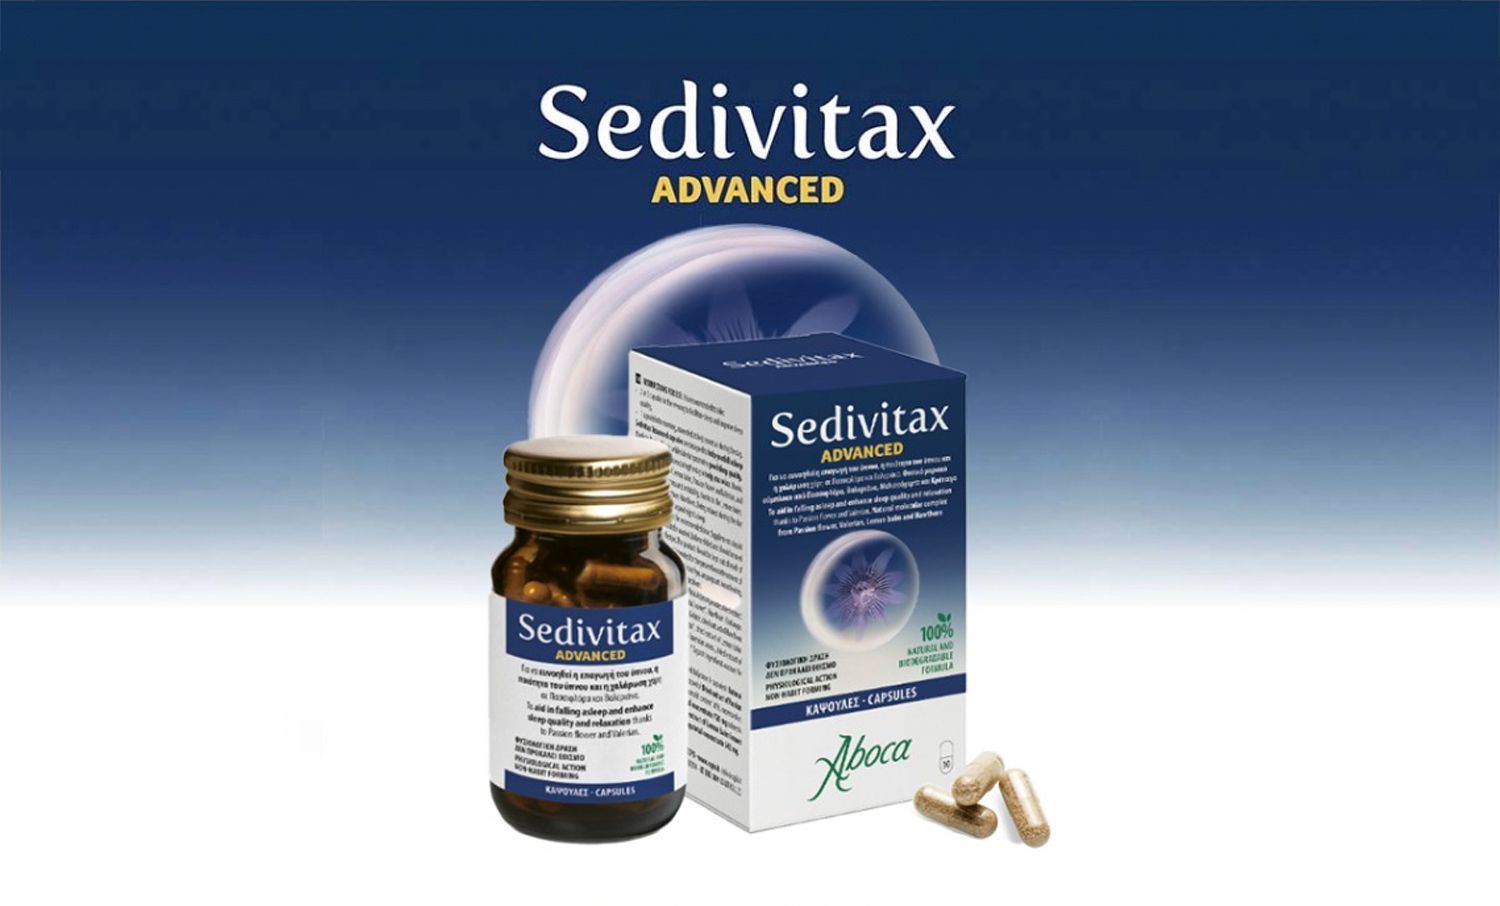 Sedivitax Advanced